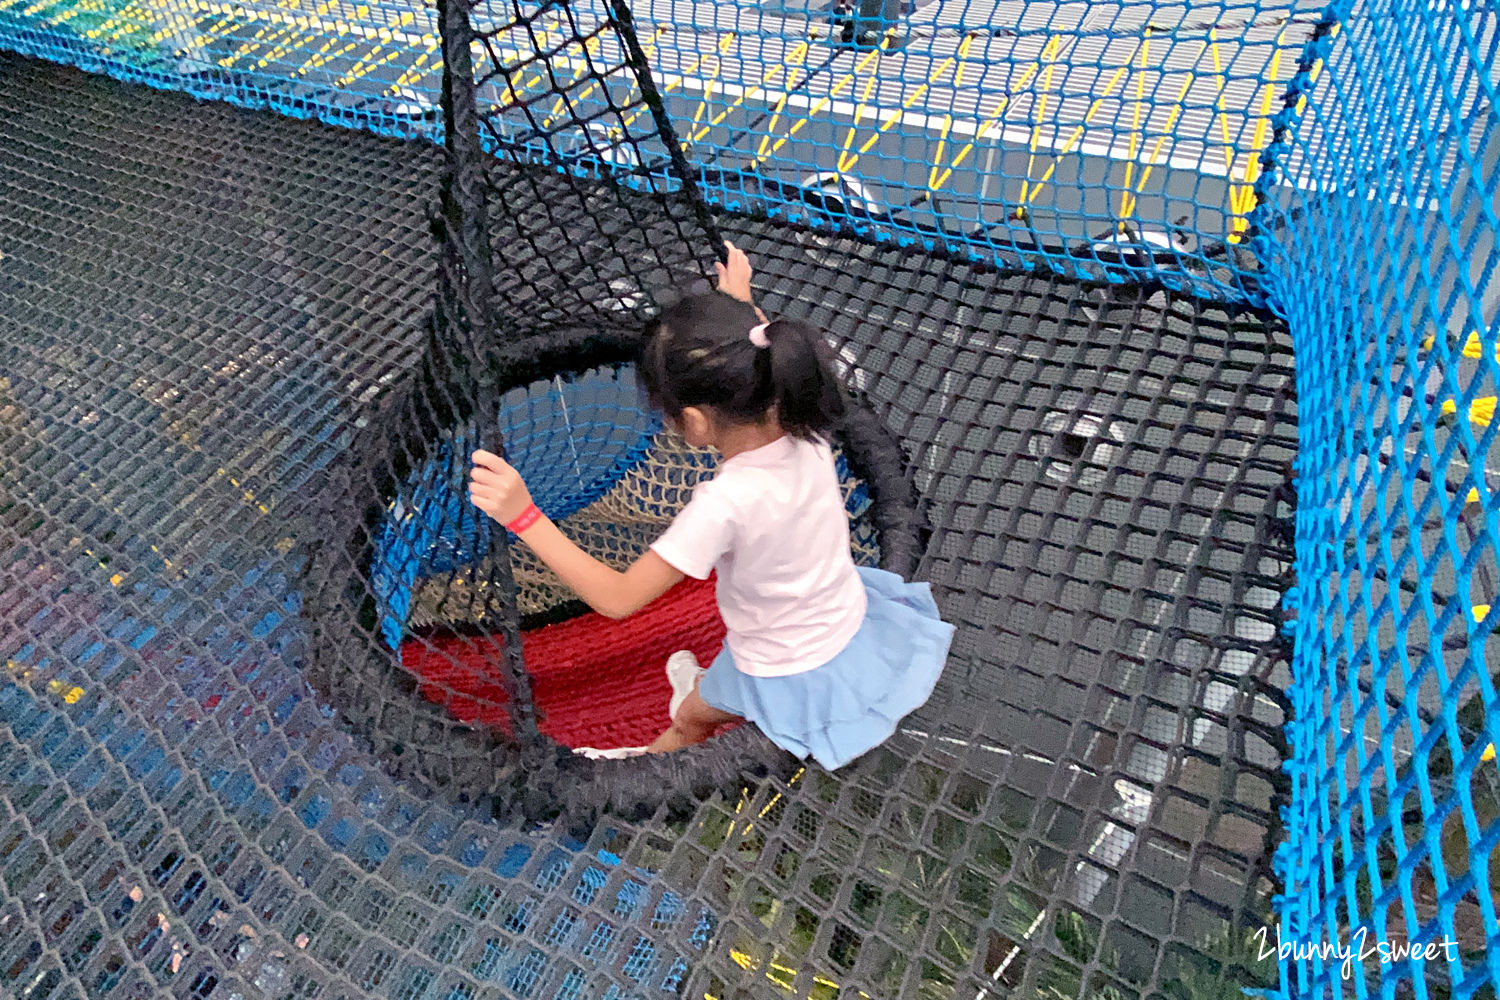 新加坡景點【星耀樟宜】五樓星空花園 Canopy Park 詳盡玩樂攻略｜新加坡室內景點 @兔兒毛毛姊妹花